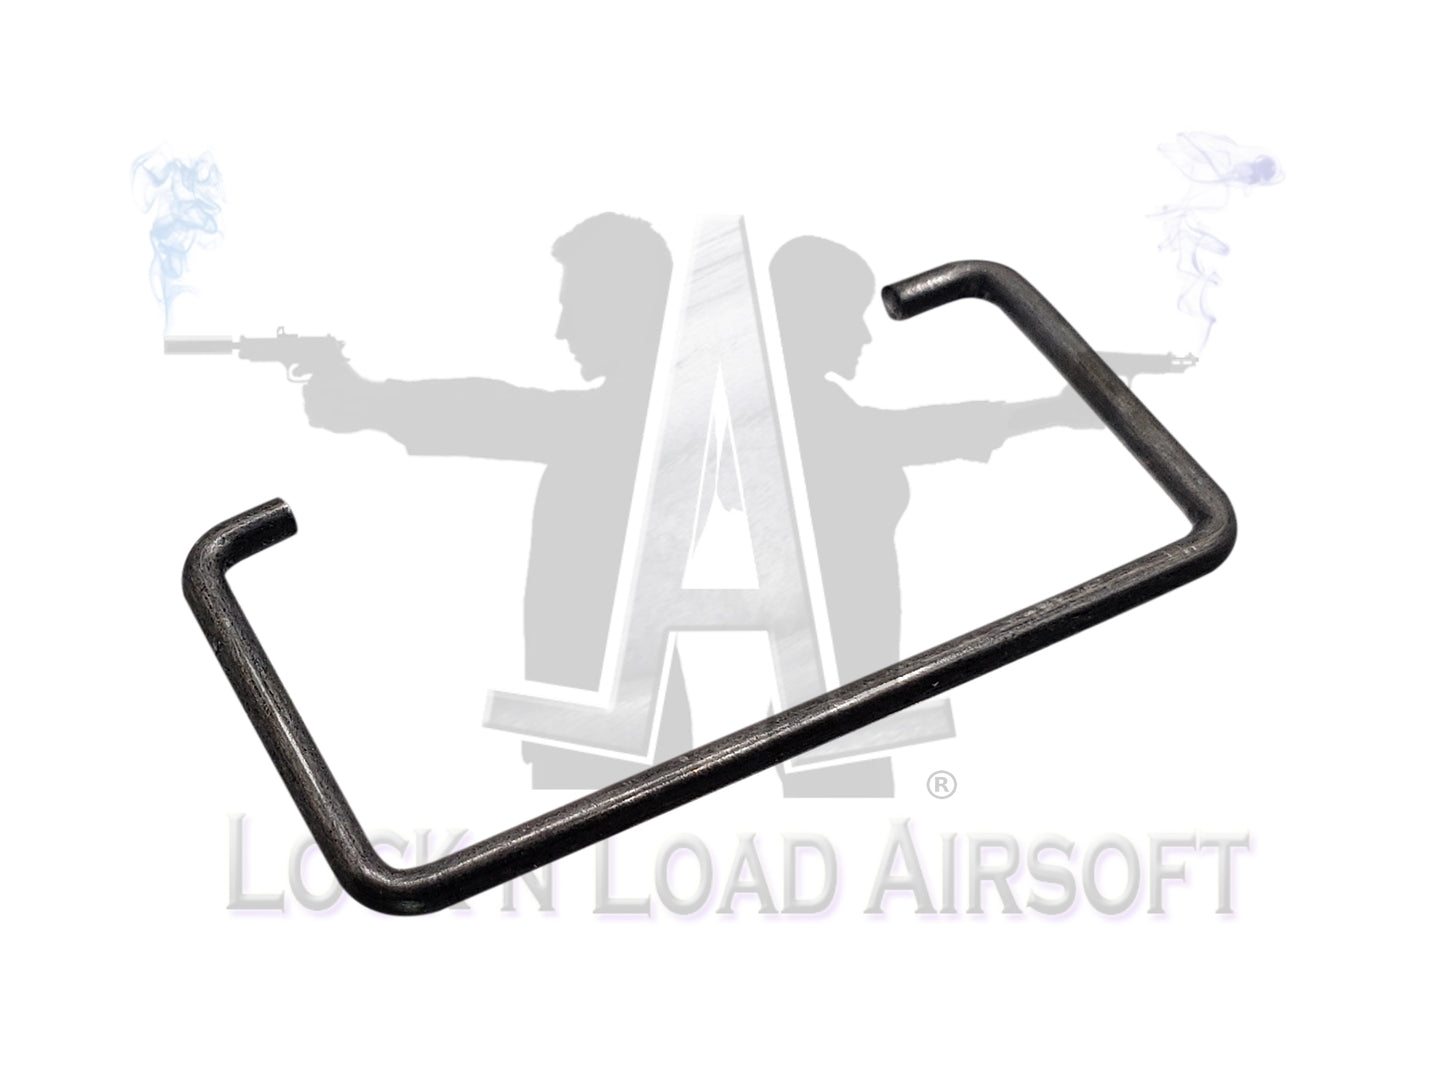 LMG M249 SAW Full Metal Dust Cover Locking Pin Securing Bracket